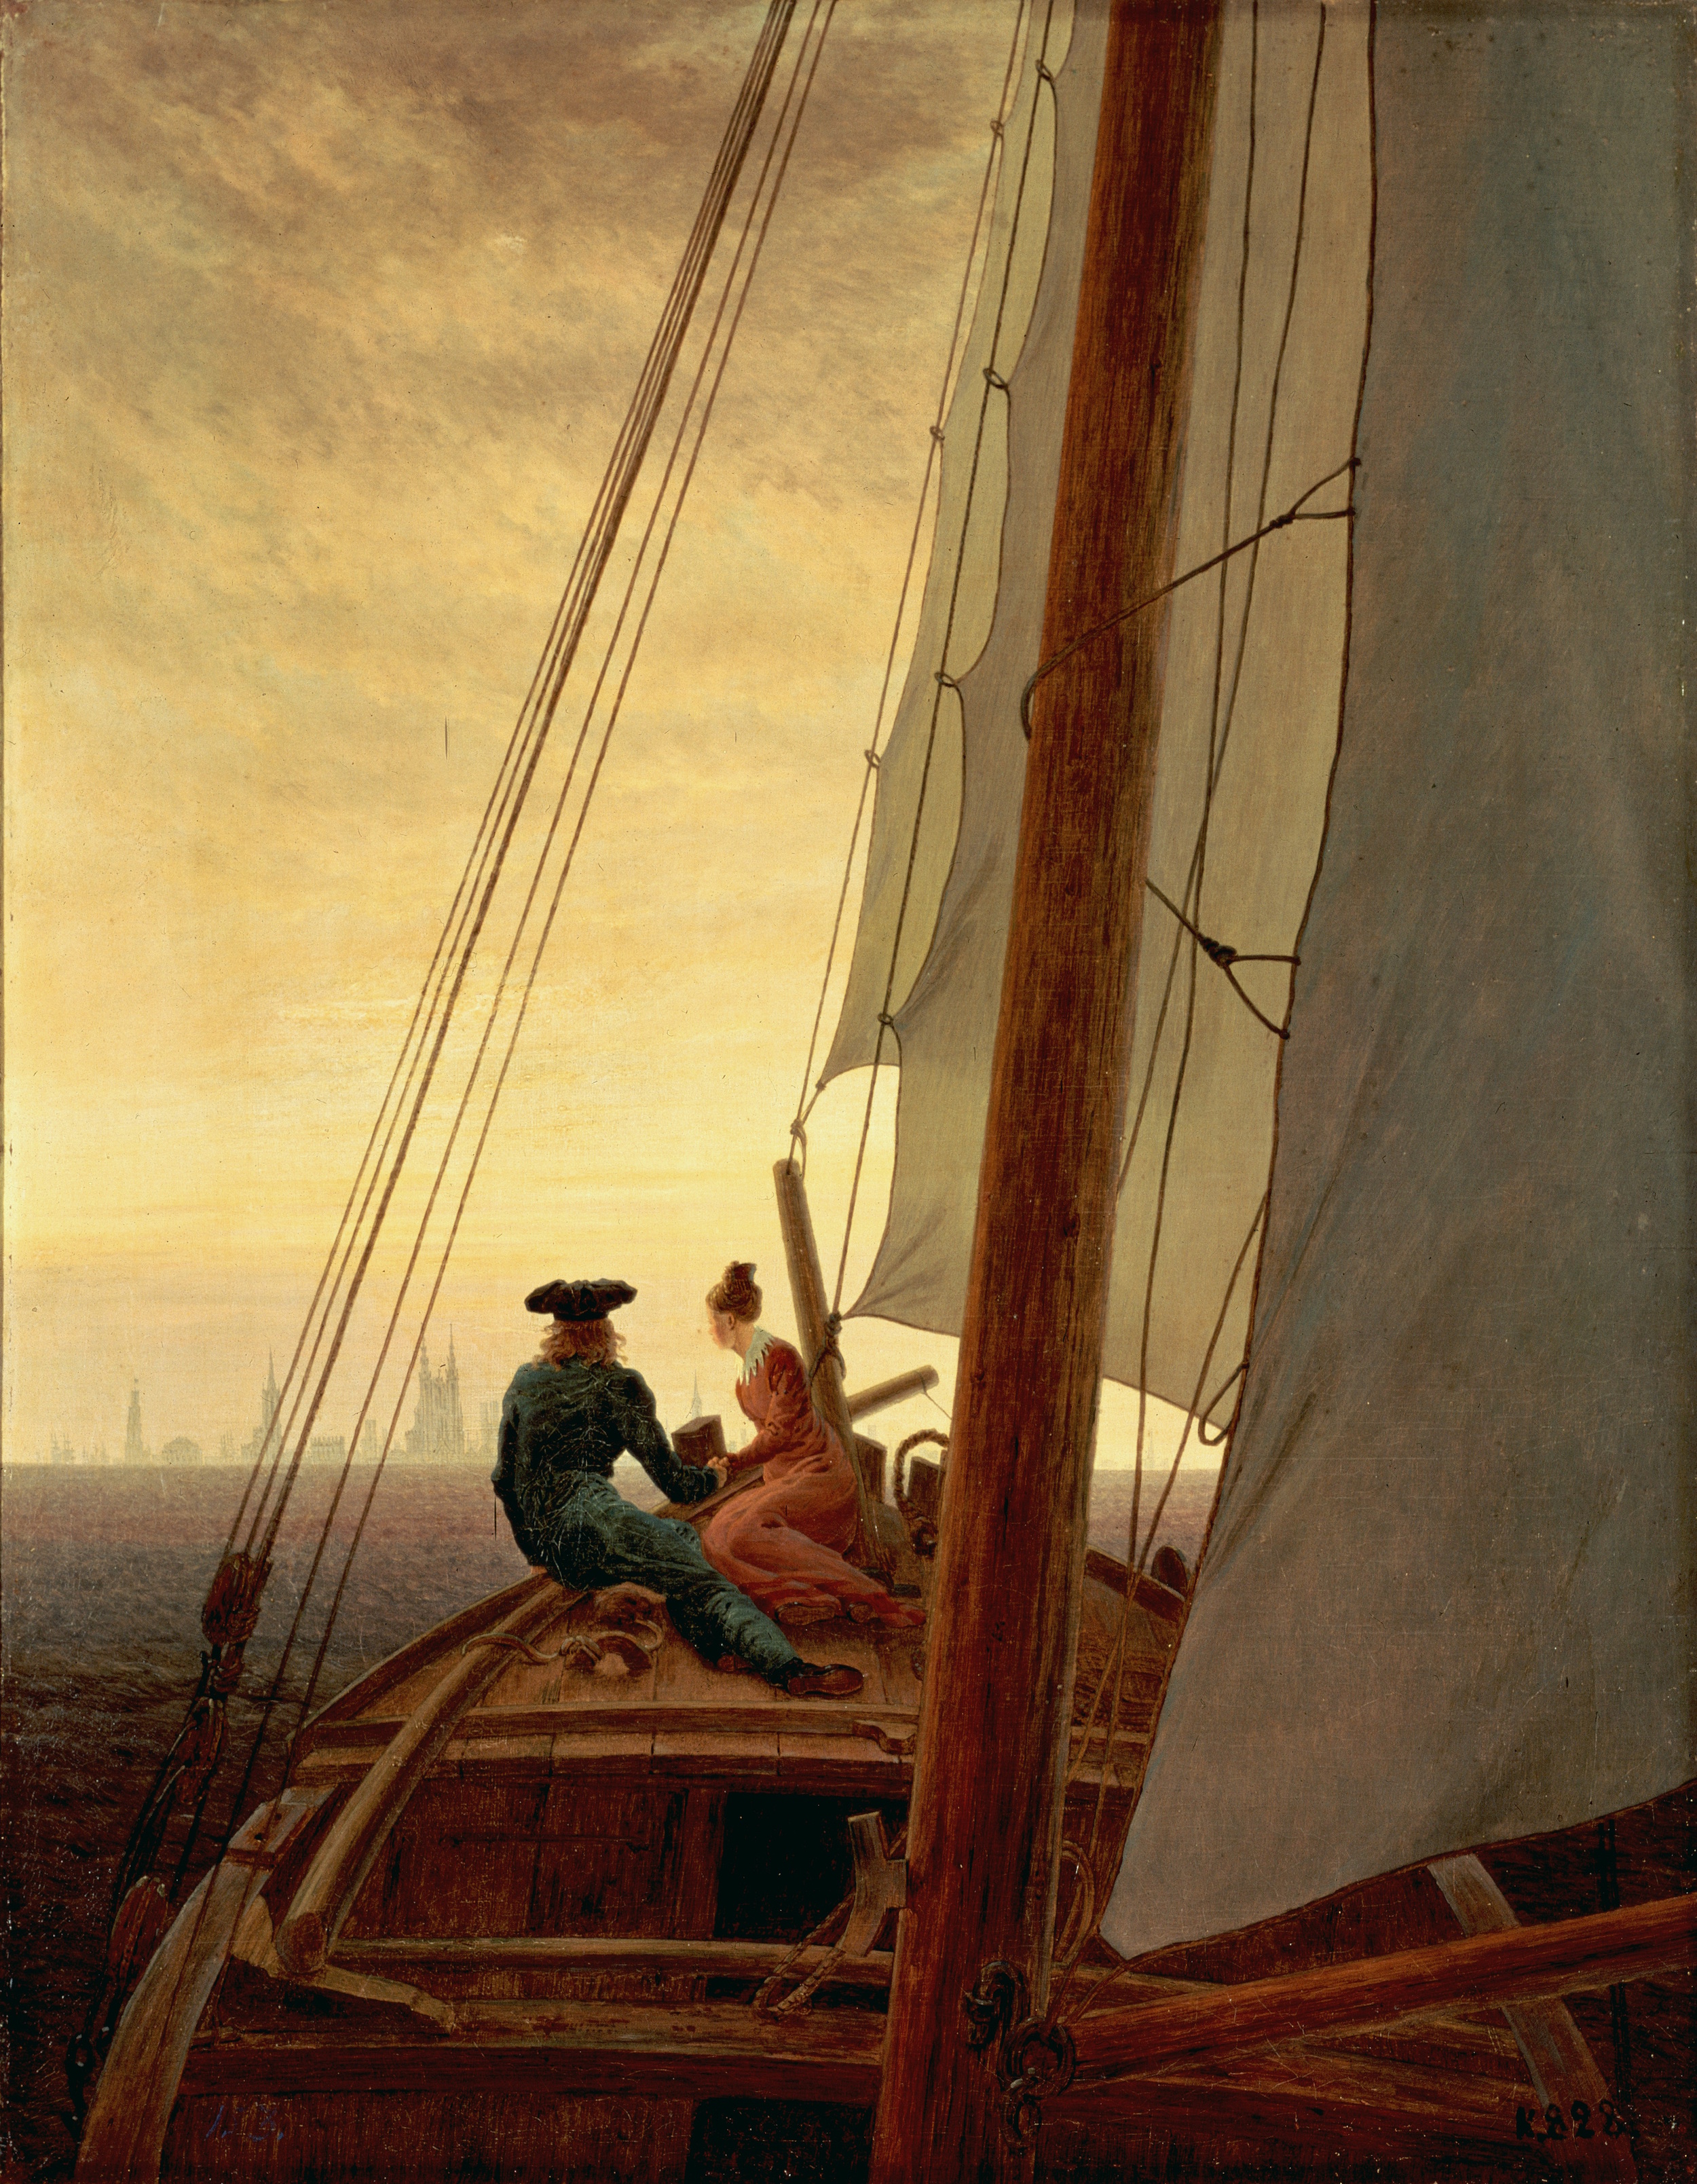 On a Sailing Boat by Caspar David Friedrich - 1819 - 71 x 56 cm Hermitage Museum